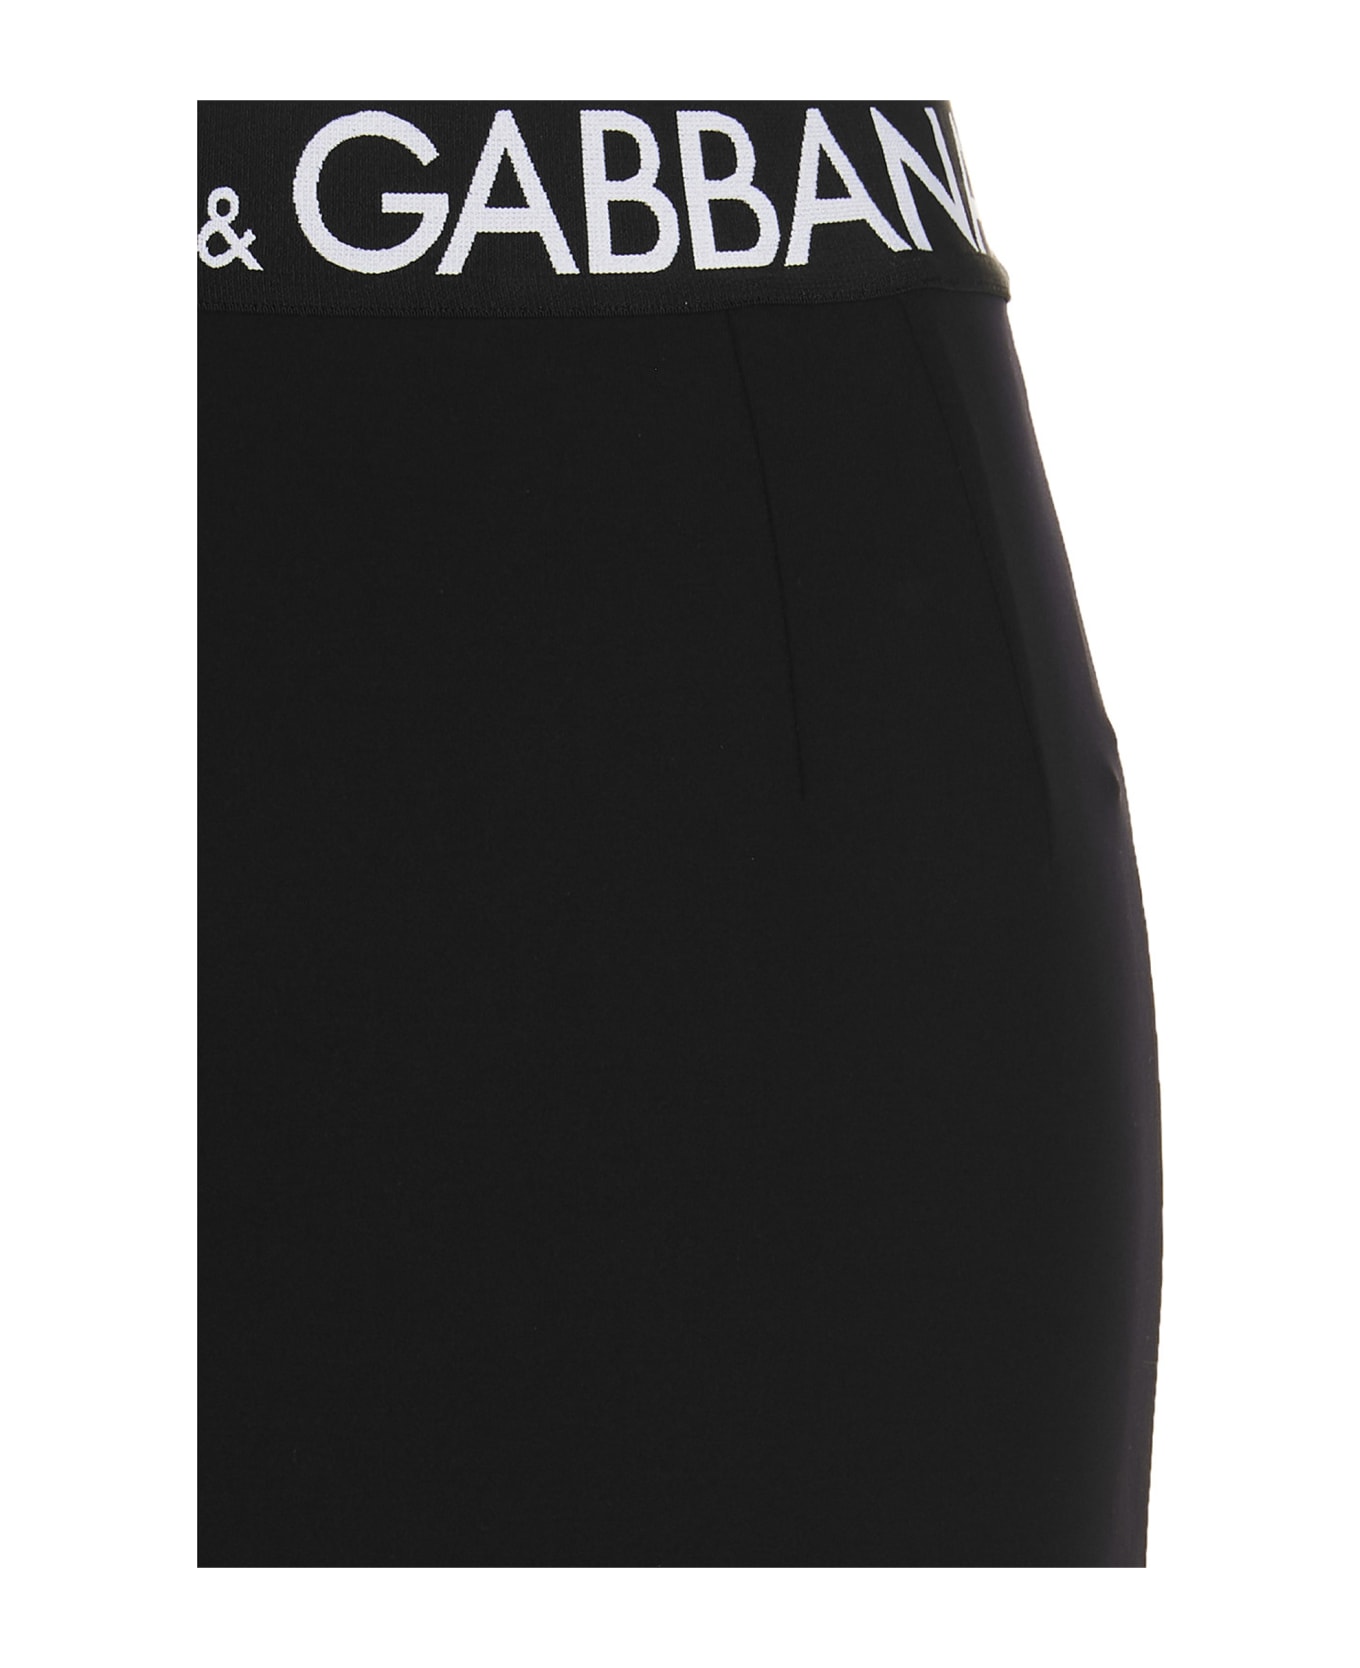 Dolce & Gabbana Logo Elastic Skirt